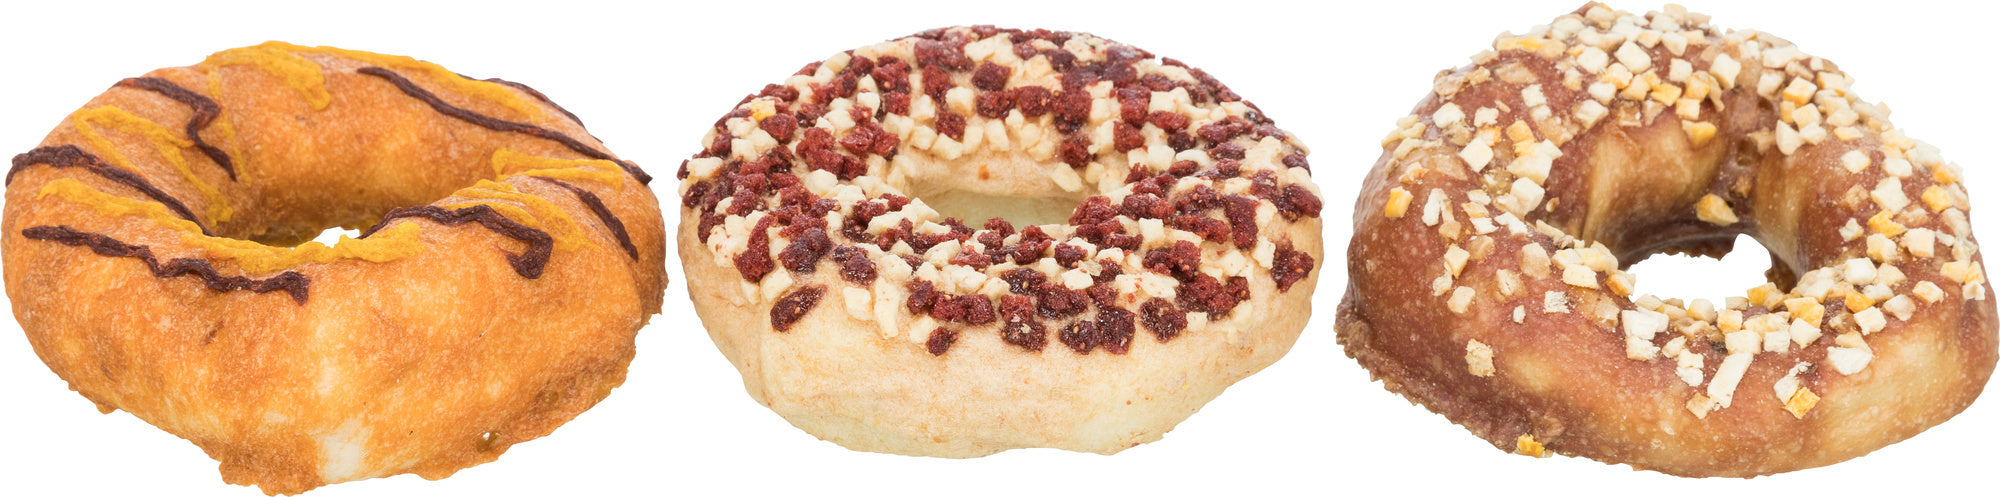 Donuts 3 stuks - Pip & Pepper by Dierenspeciaalzaak Huysmans